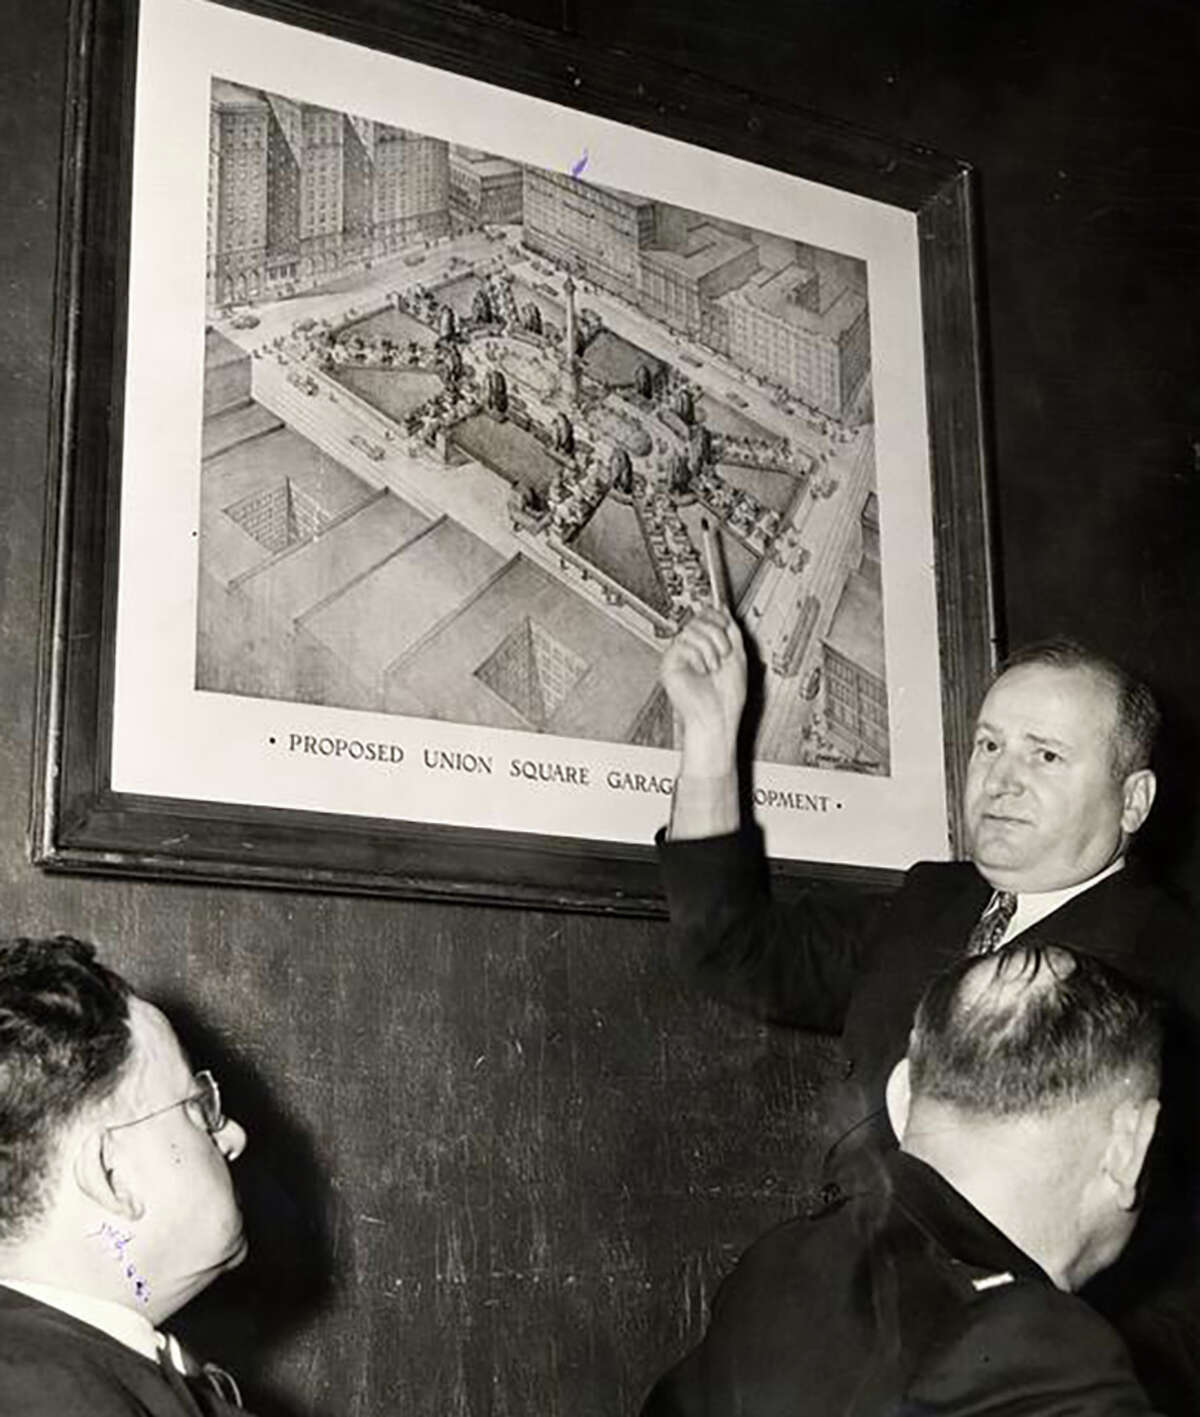 Timothy Pflueger, arriba a la derecha, explicando los planes para el estacionamiento propuesto en Union Square, 12 de diciembre de 1940.